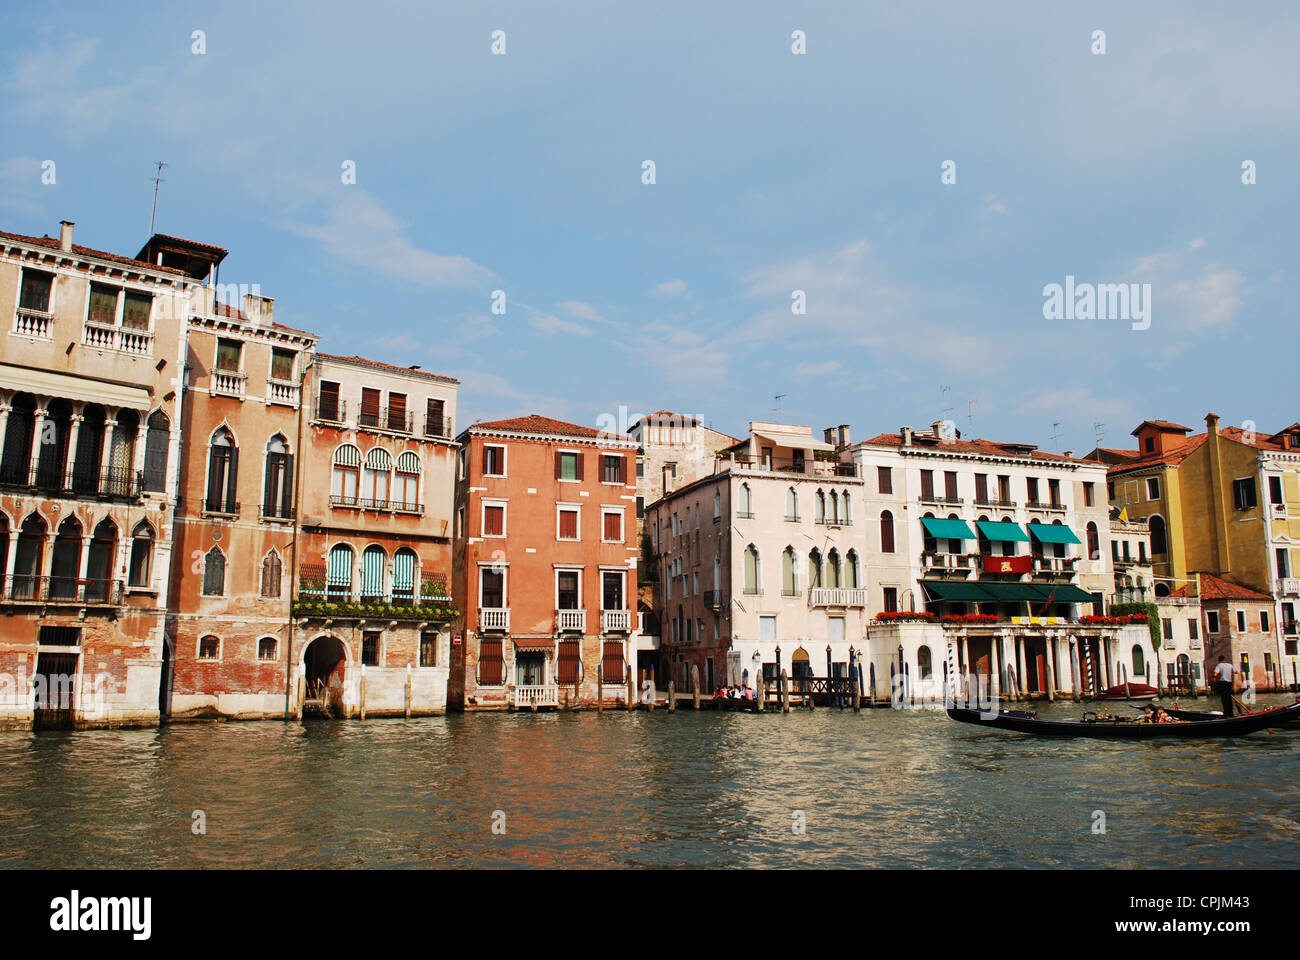 Les vieilles maisons colorées sur le Grand Canal, Venise, Italie Banque D'Images